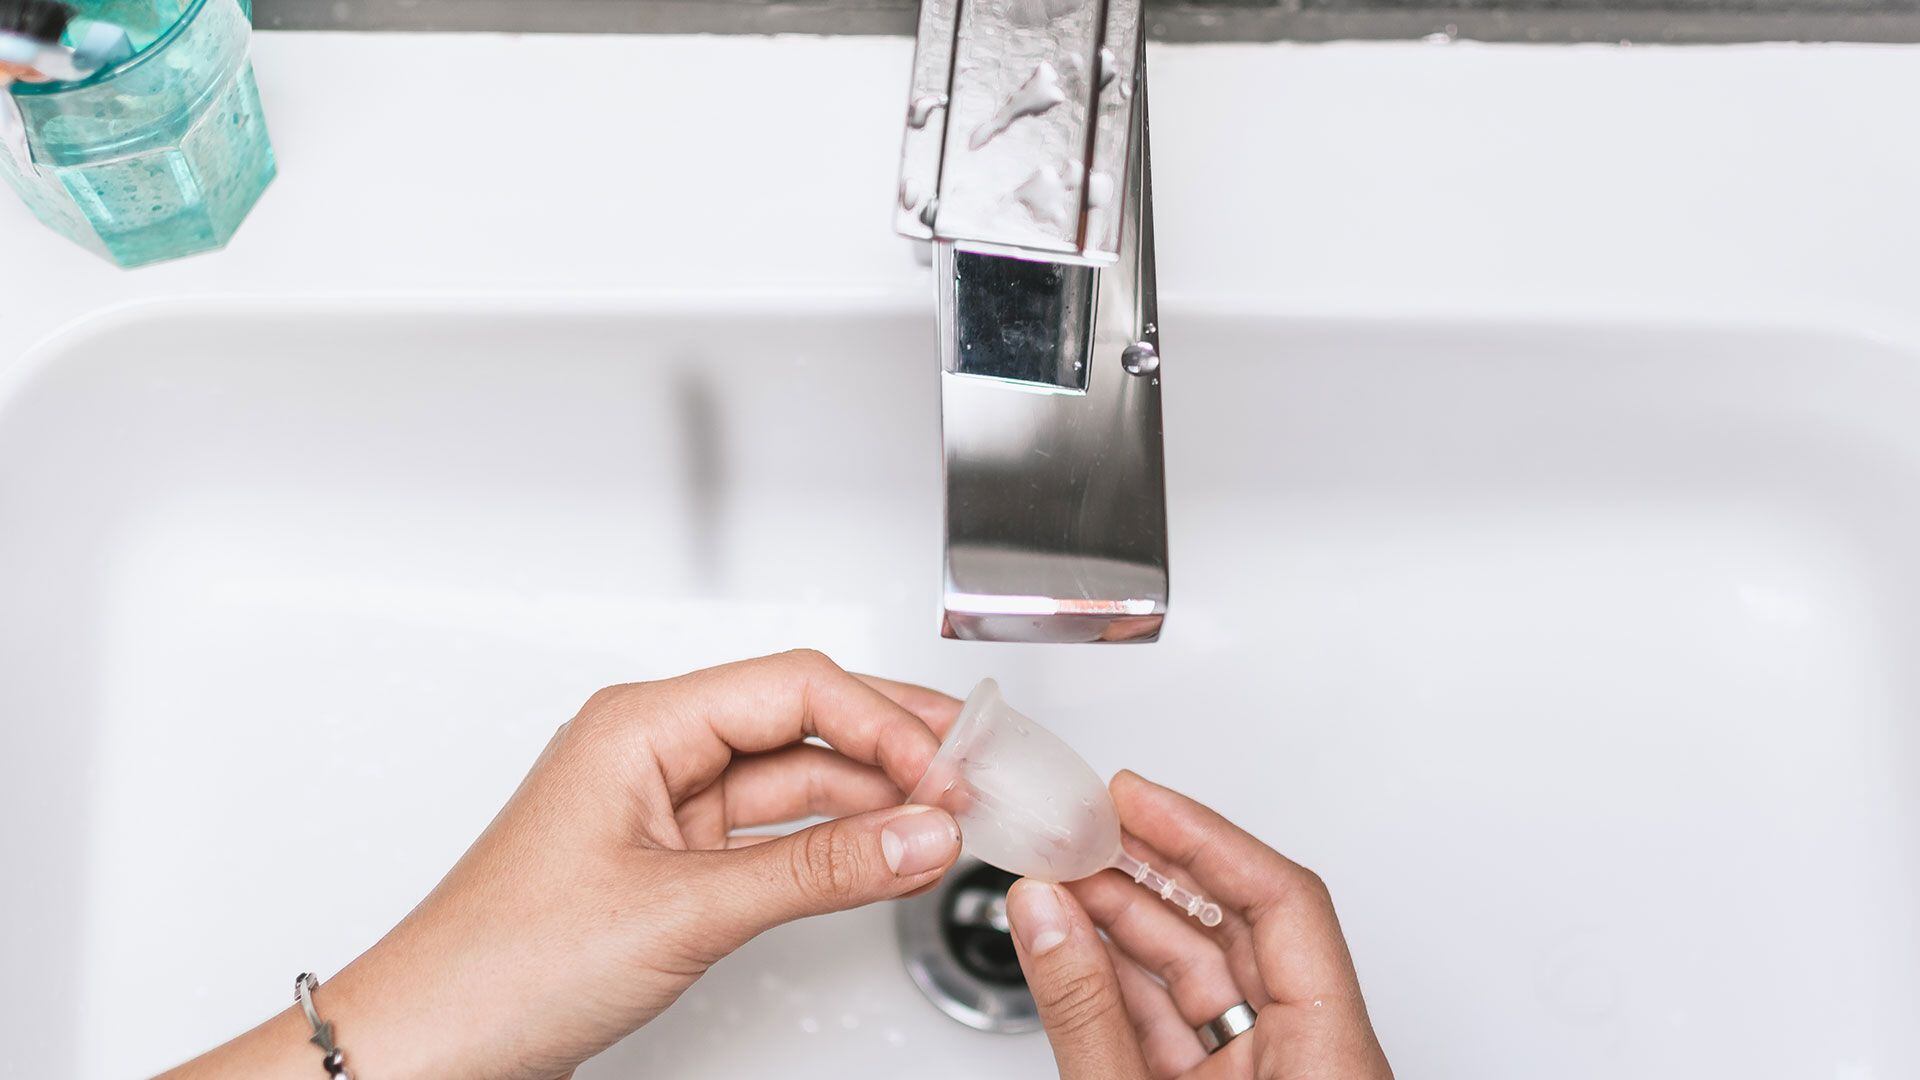 Si se usa durante 10 años, una copa menstrual genera sólo 0,4% de la basura plástica que implica la toallita de un solo uso y 6% de la cantidad de residuos que se producen al usar tampones (Shutterstock)